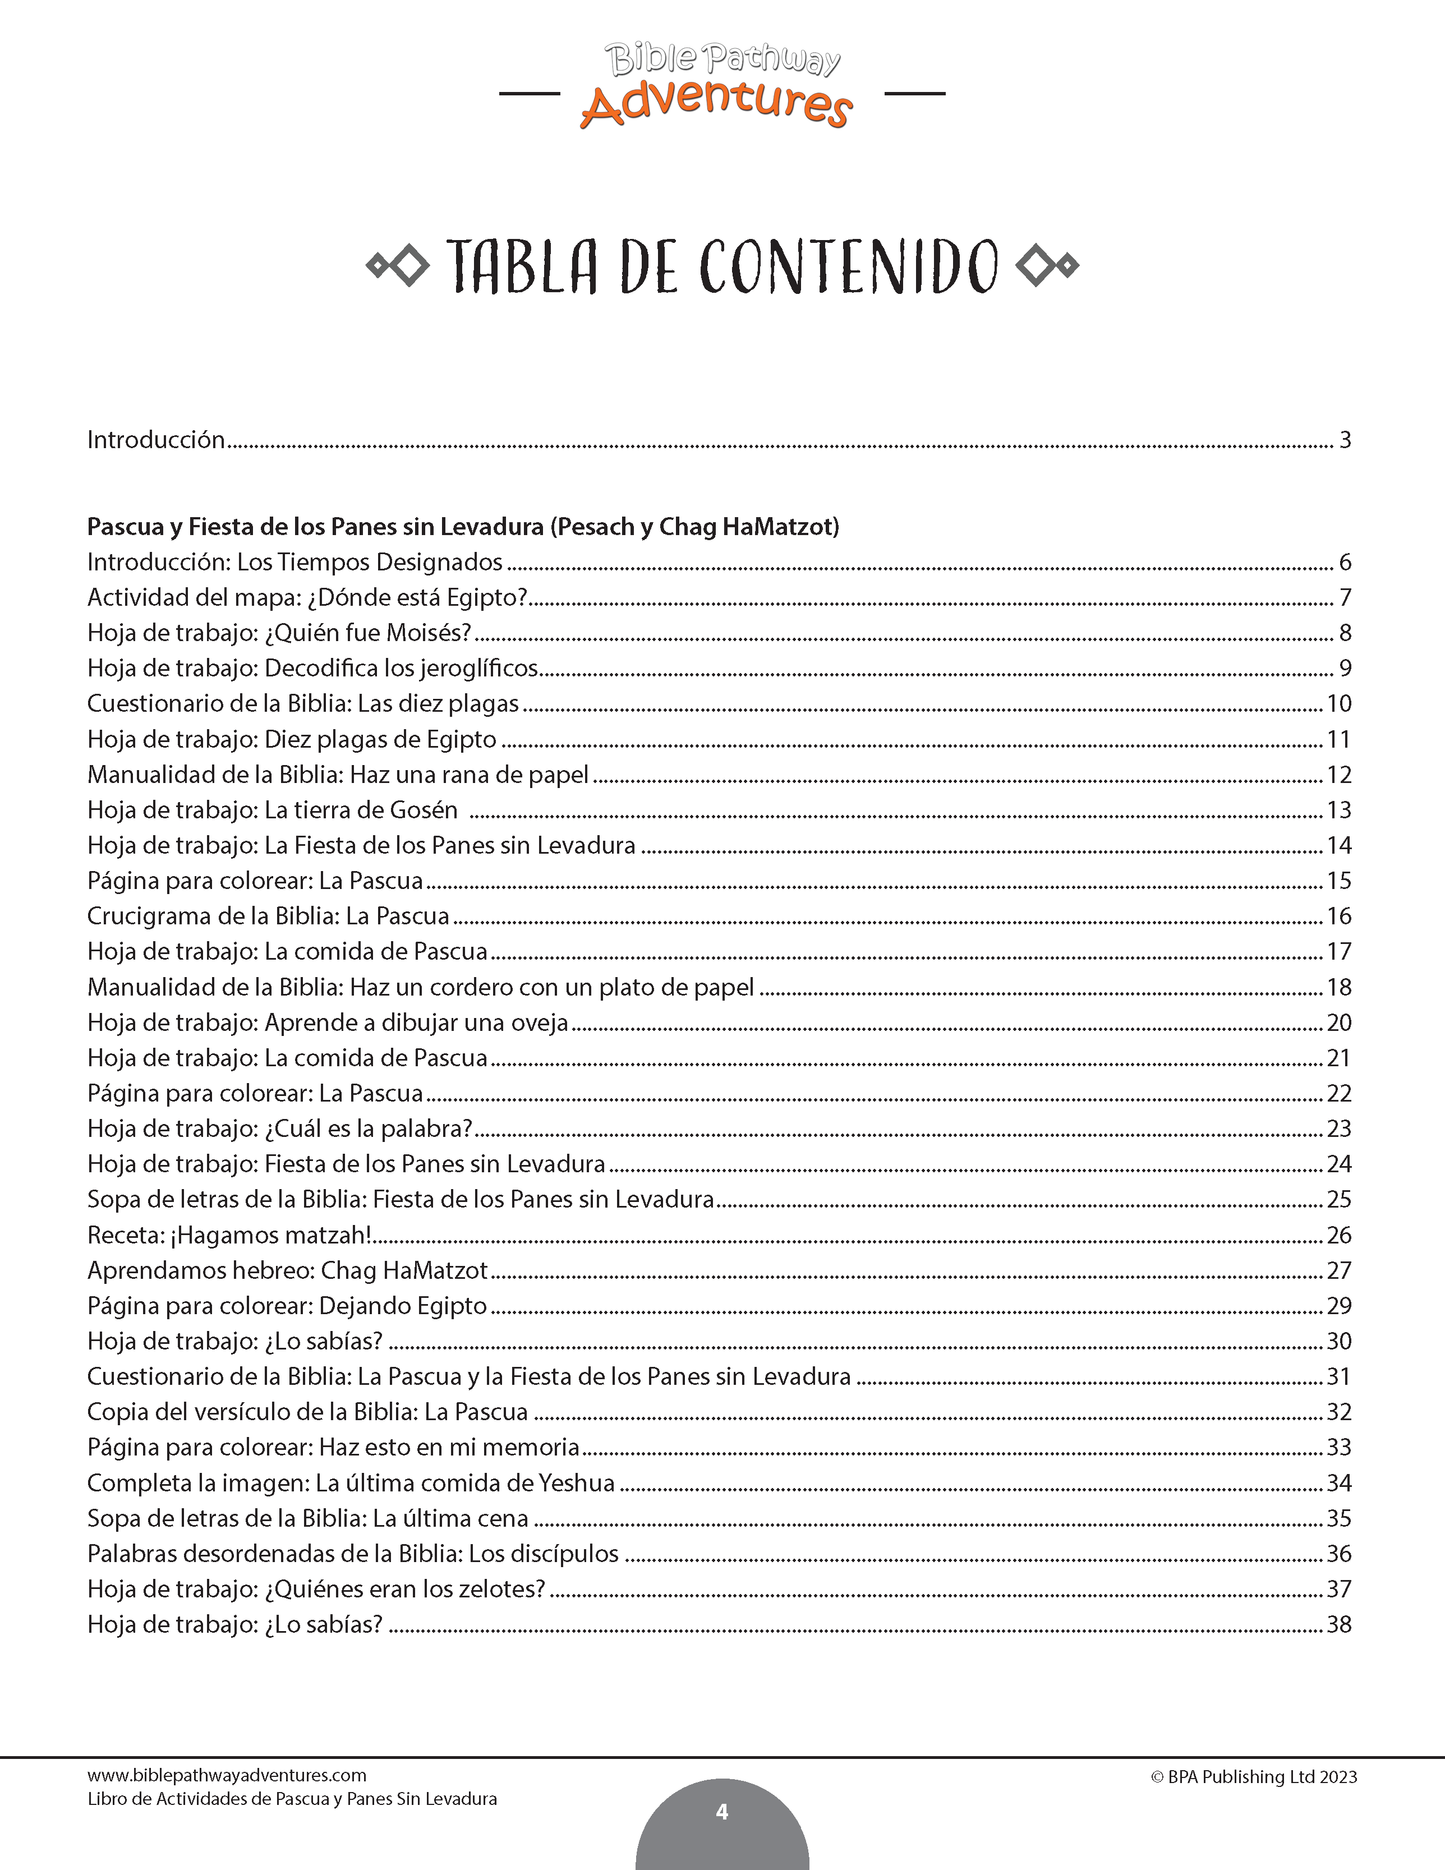 BUNDLE: La historia de la Pascua: Libros de actividades (PDF)